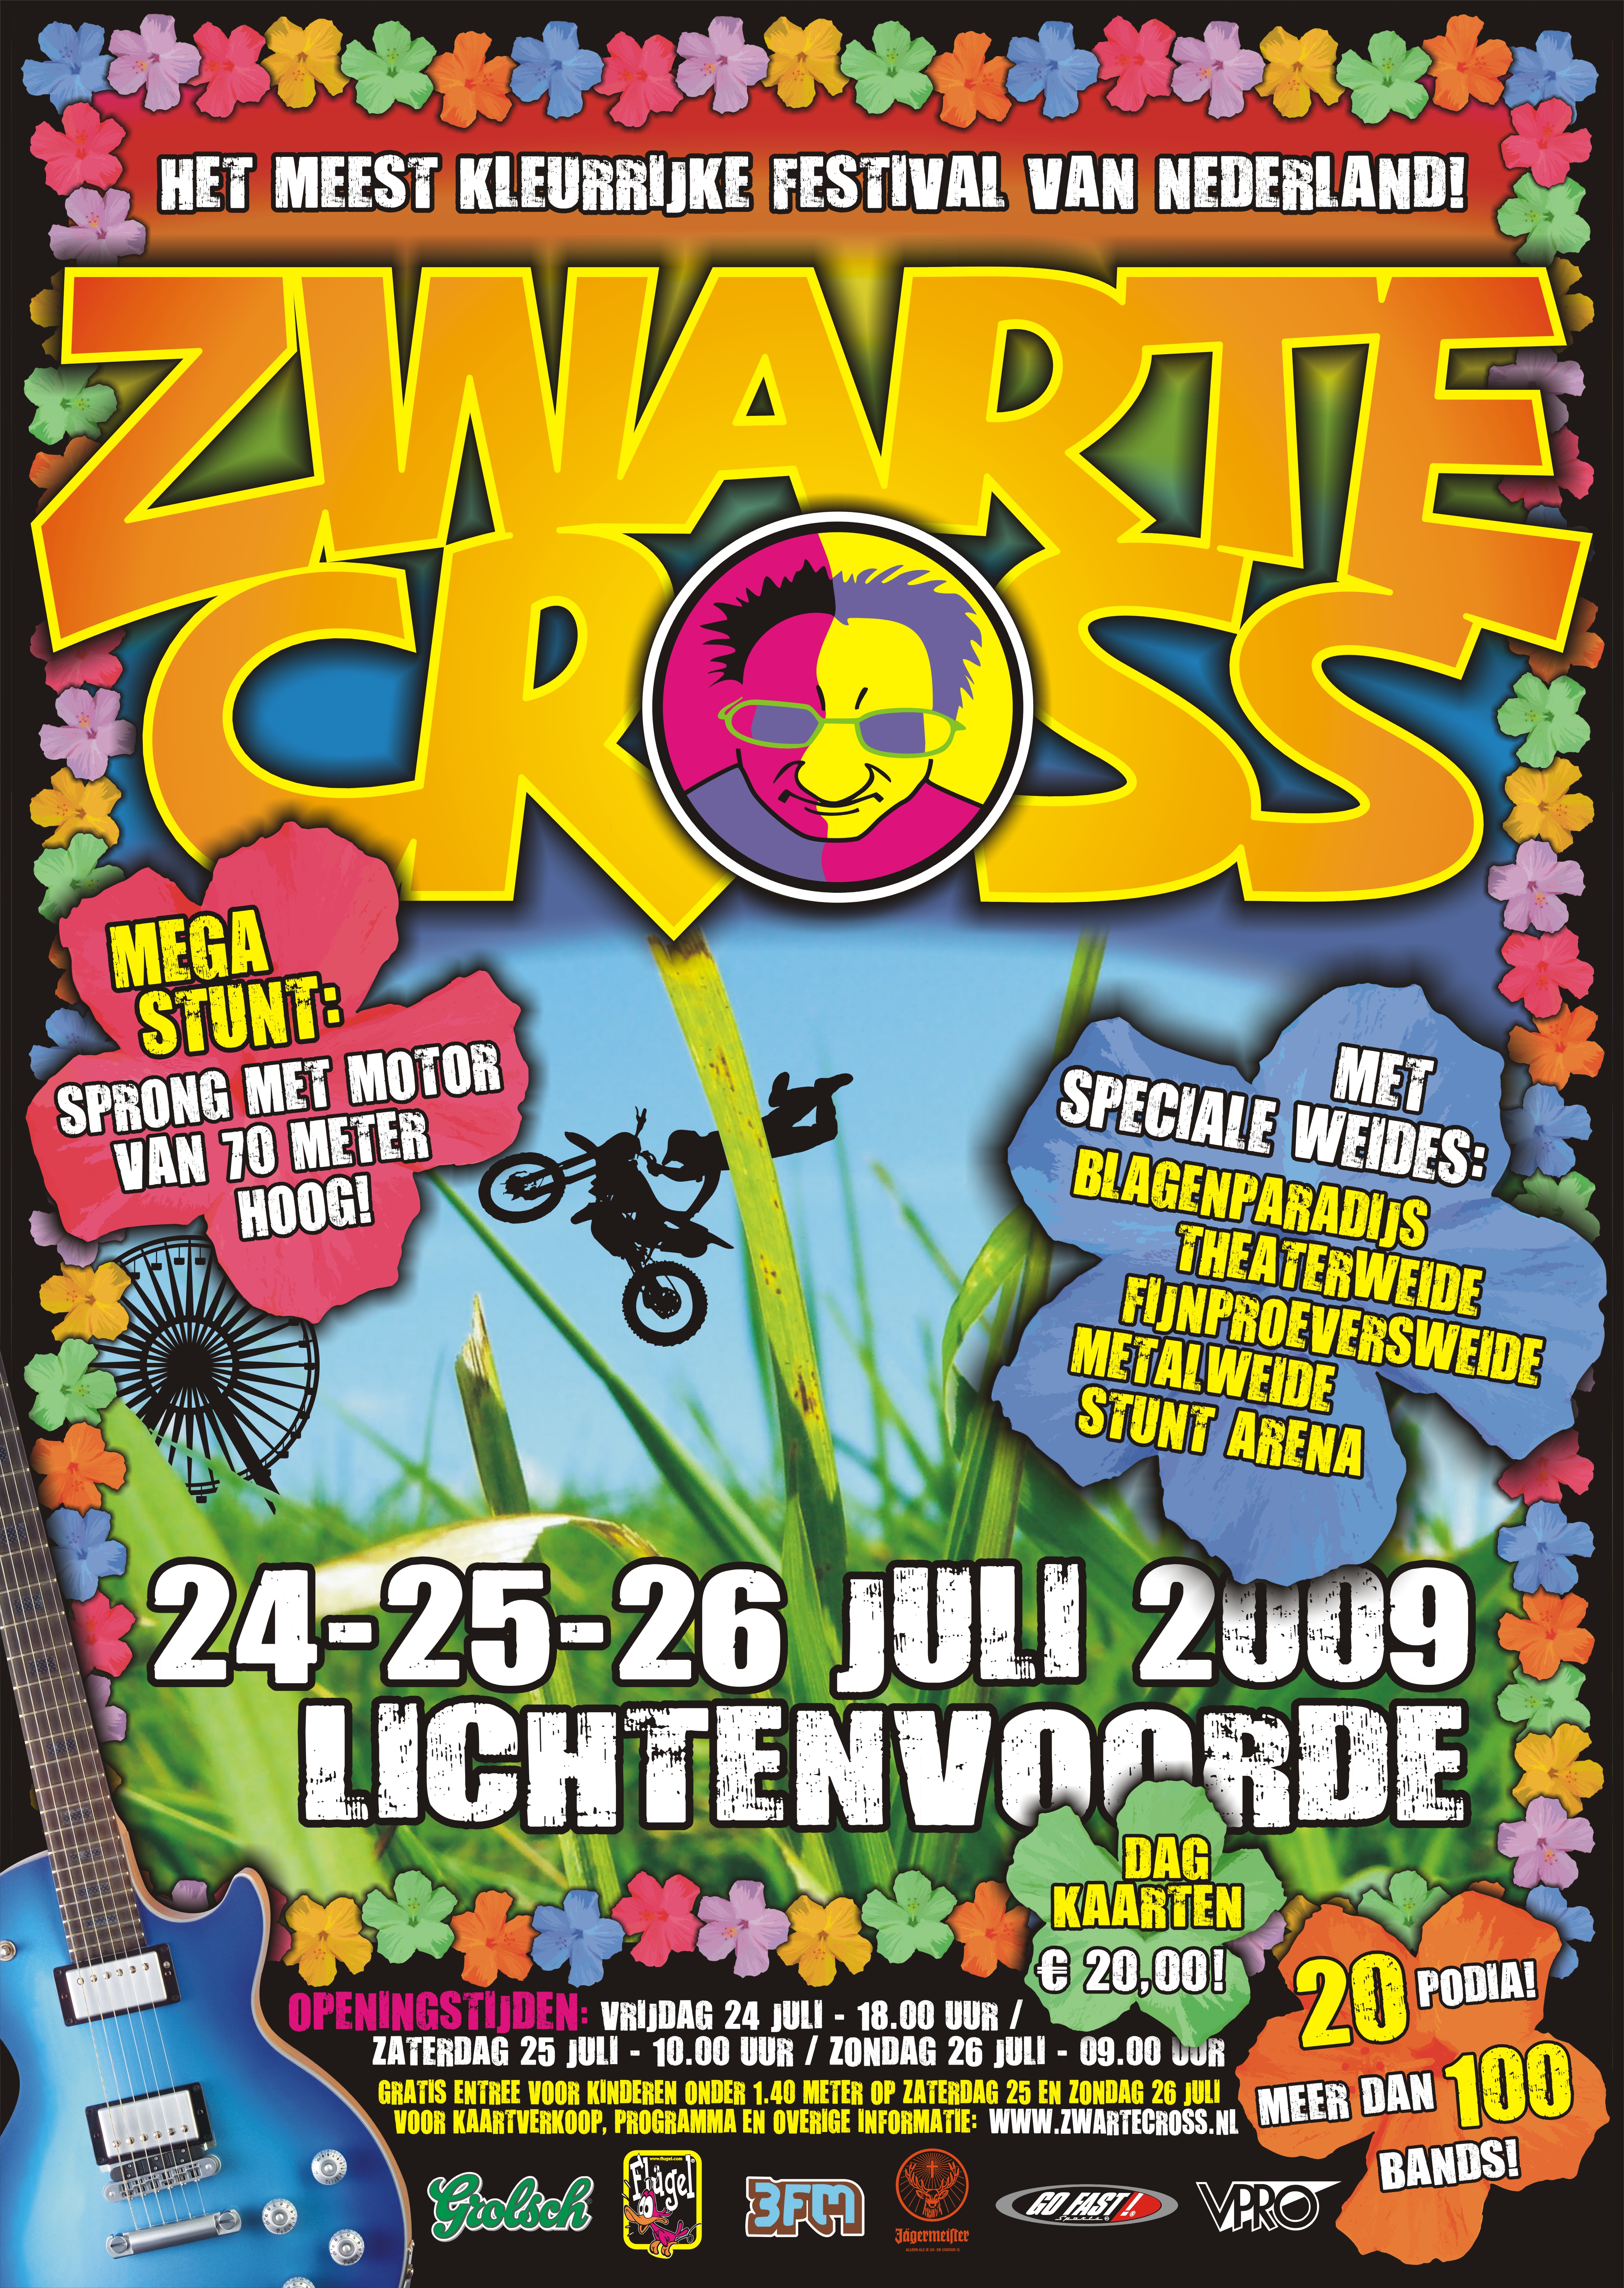 Zwarte Cross / NAJK op de Zwarte Cross 2016! - NAJK / Find 2,561 traveler reviews, 297 candid photos, and prices for 860 hotels near zwarte cross in lichtenvoorde, the netherlands.